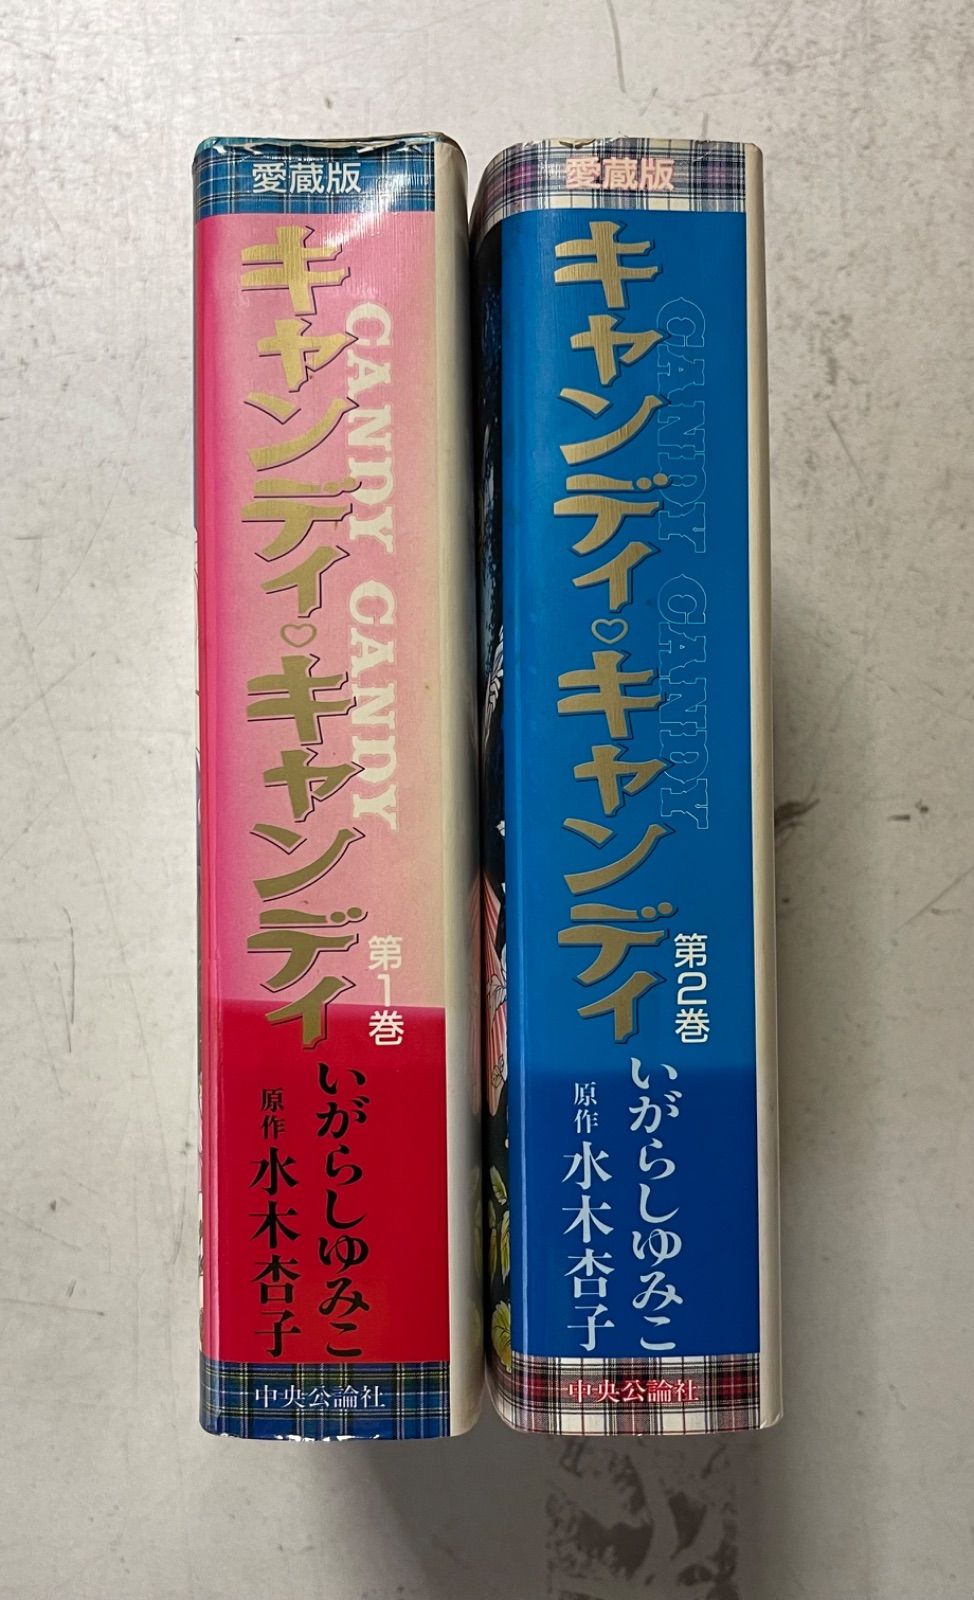 キャンディ・キャンディ キャンディキャンディ 愛蔵版 全2巻完結セット